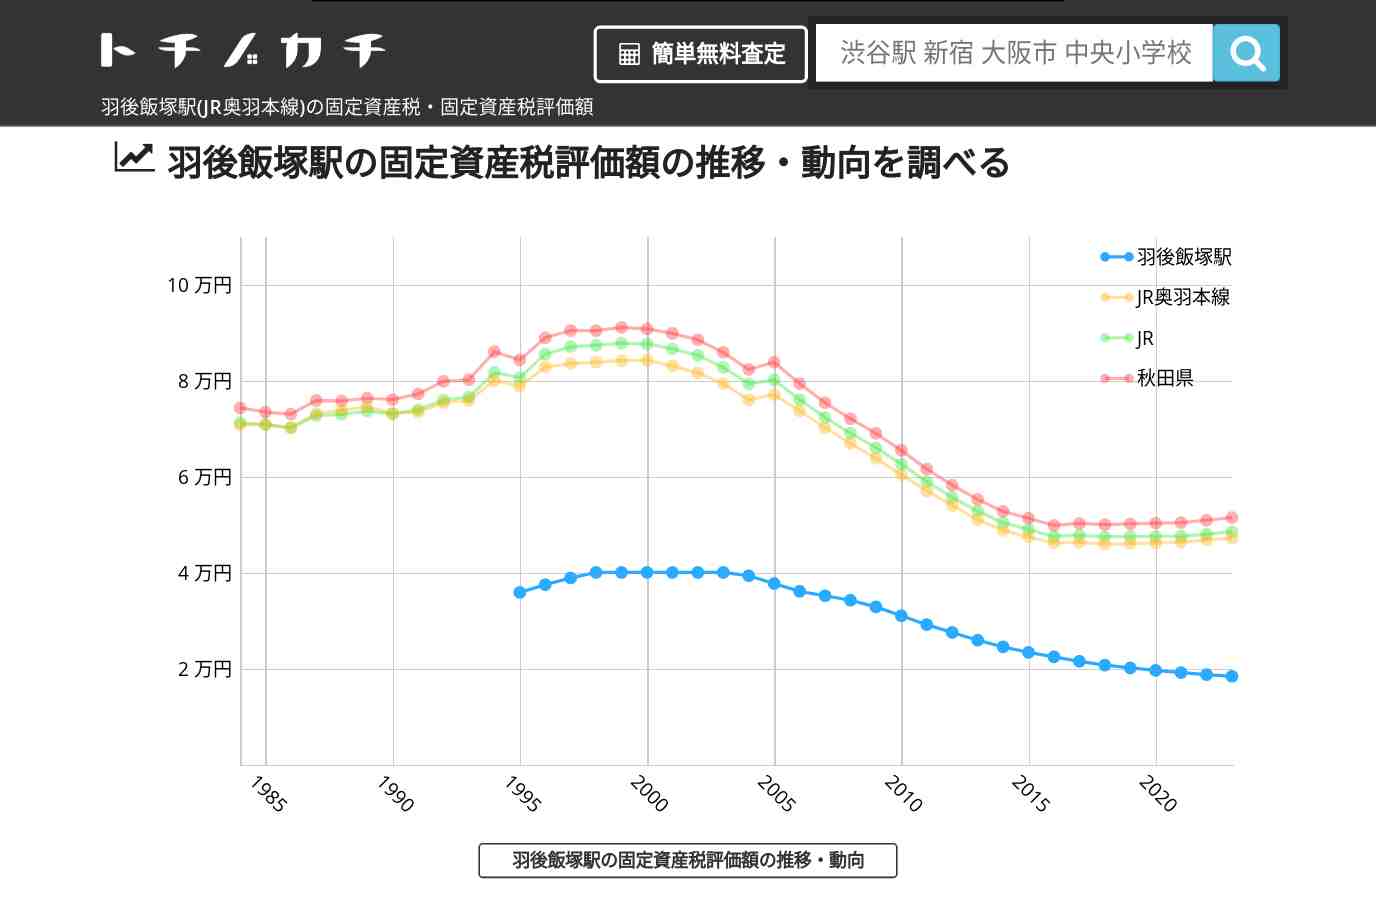 羽後飯塚駅(JR奥羽本線)の固定資産税・固定資産税評価額 | トチノカチ